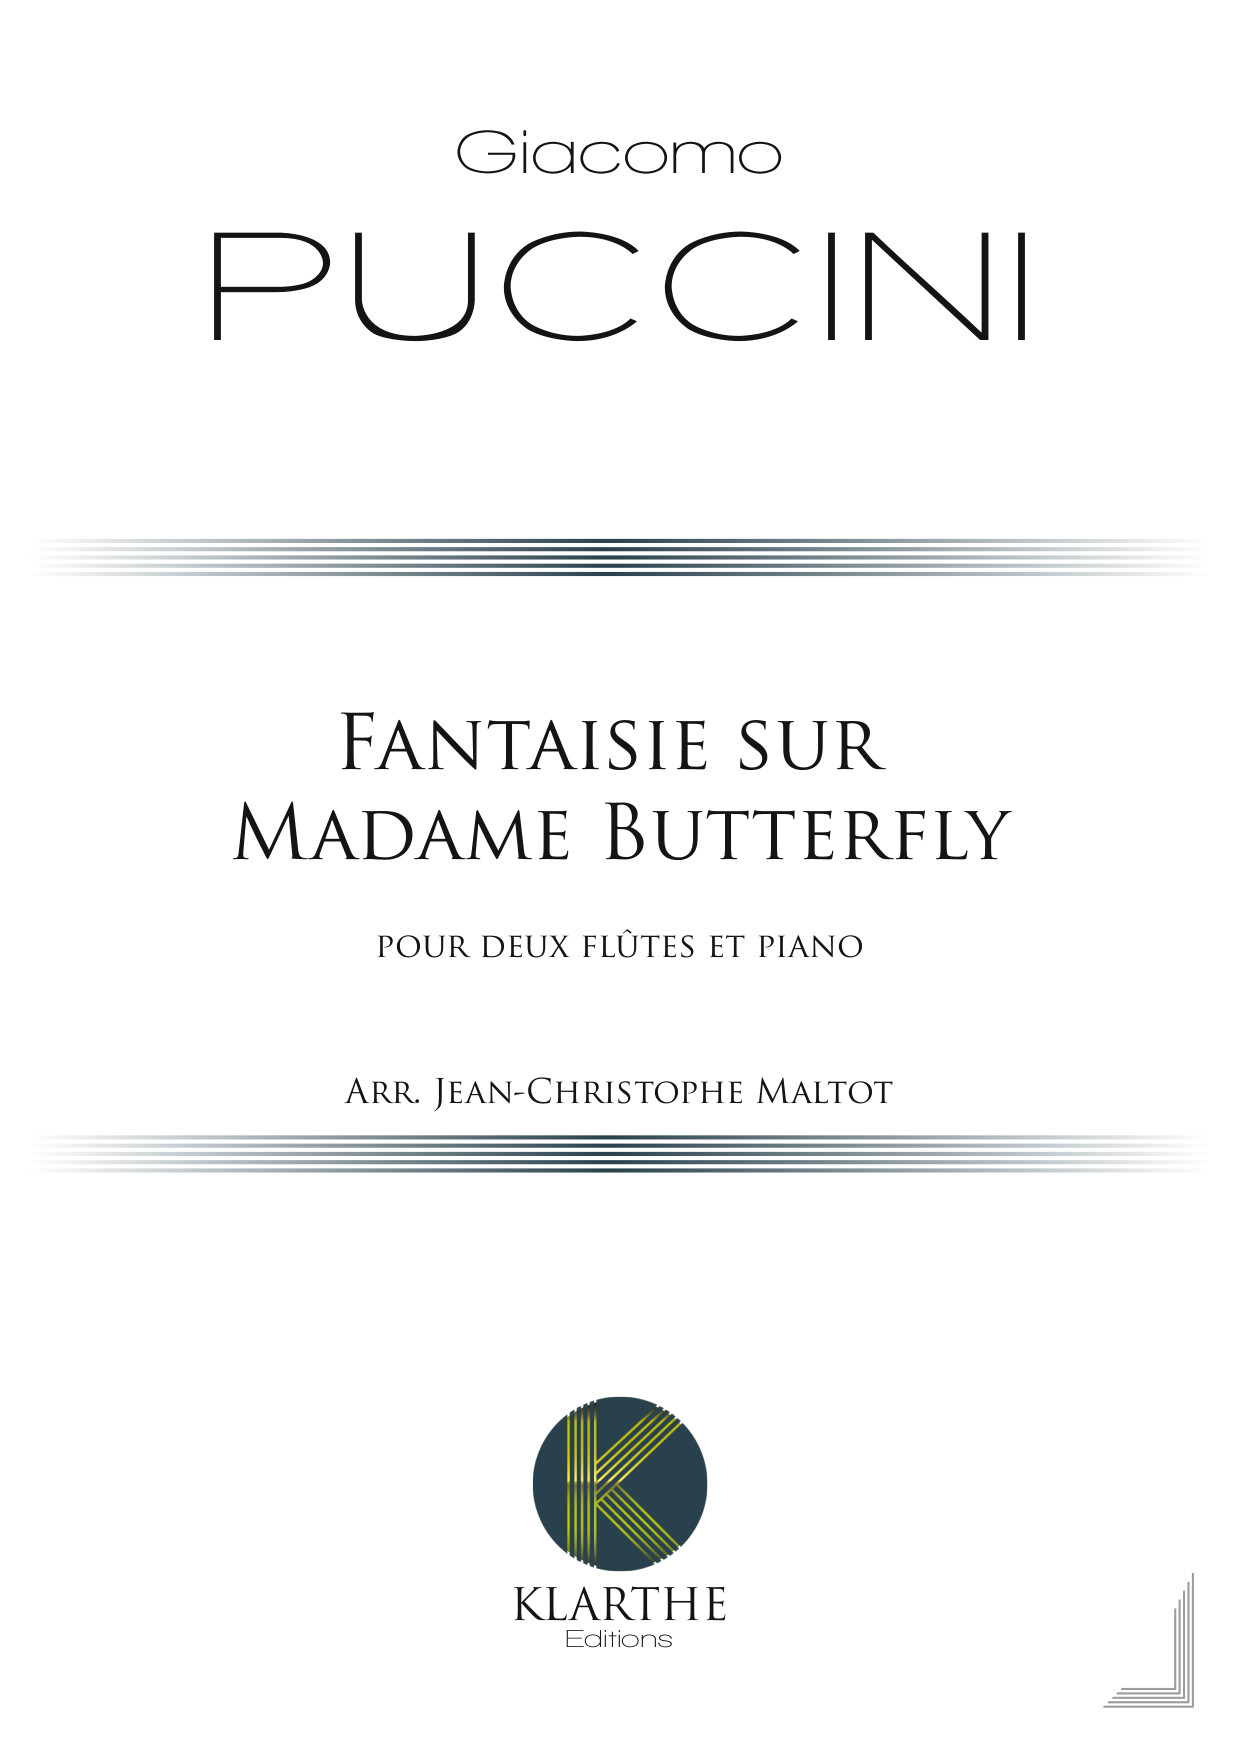 Fantaisie sur Madame Butterfly (PUCCINI GIACOMO)